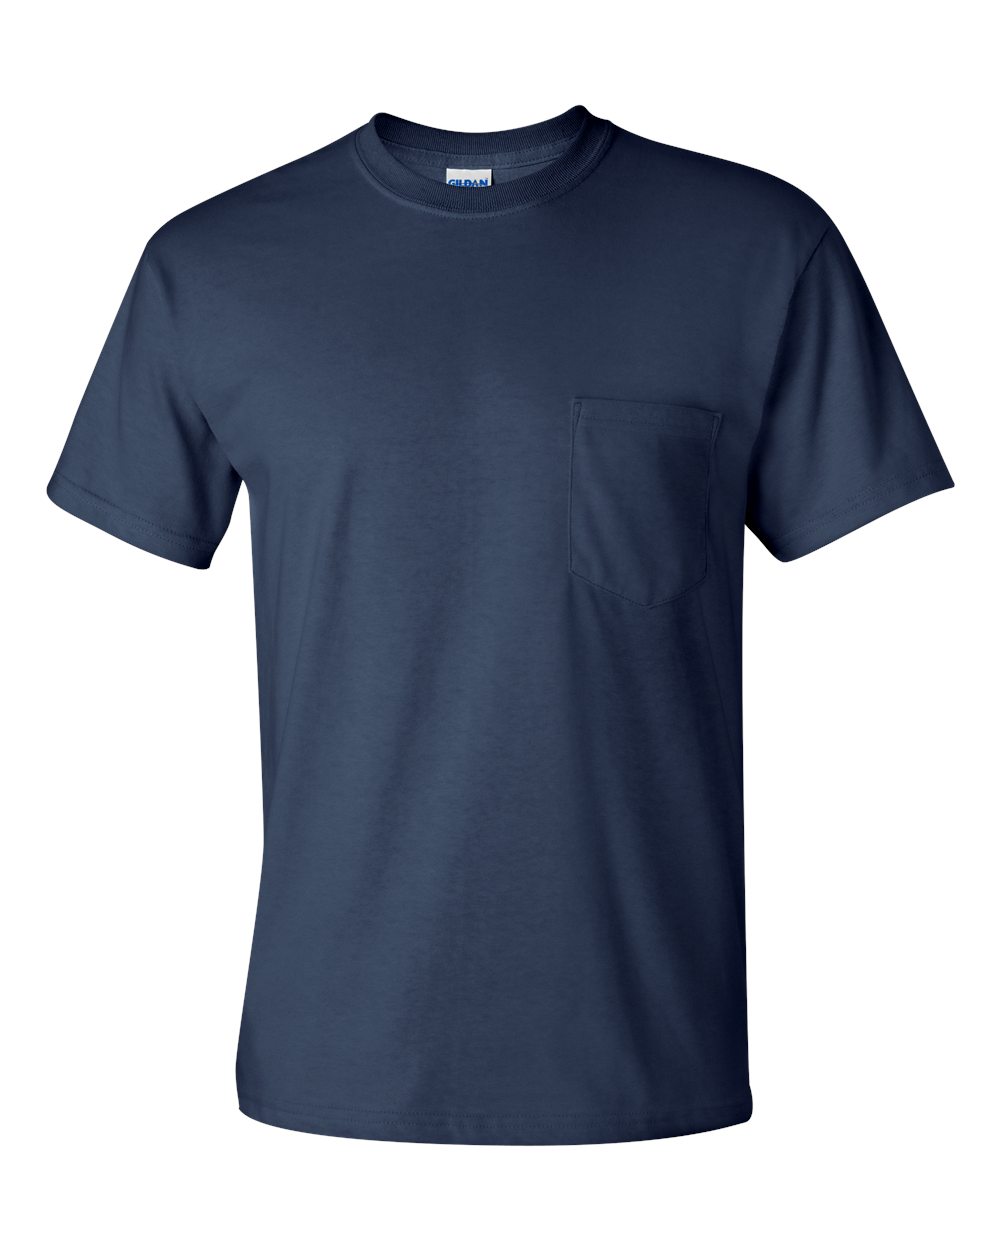 Markit GIL 2300A Pocket T-Shirt